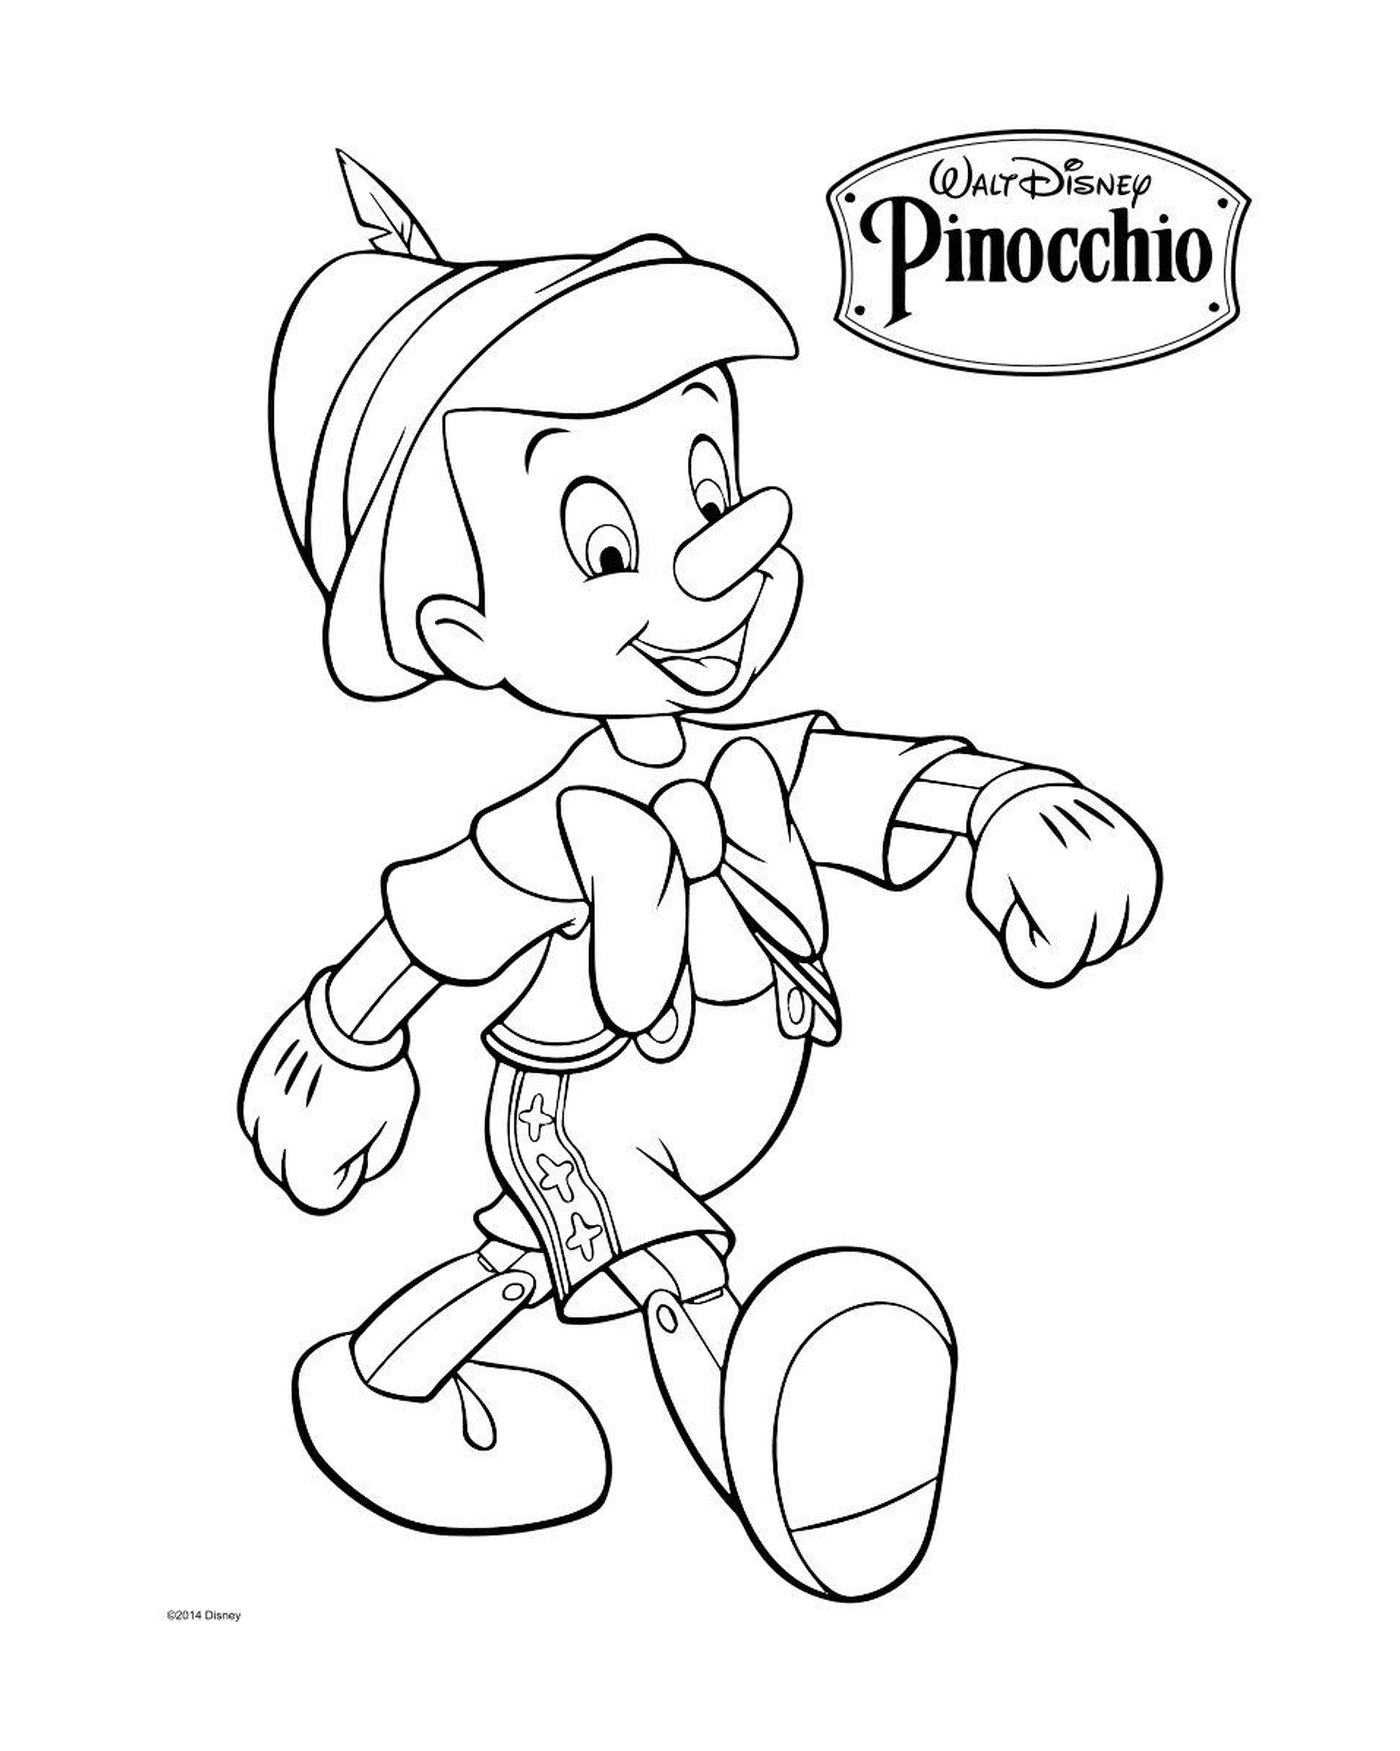  Geppetto, un falegname italiano, produce un pupazzo di Pinocchio 